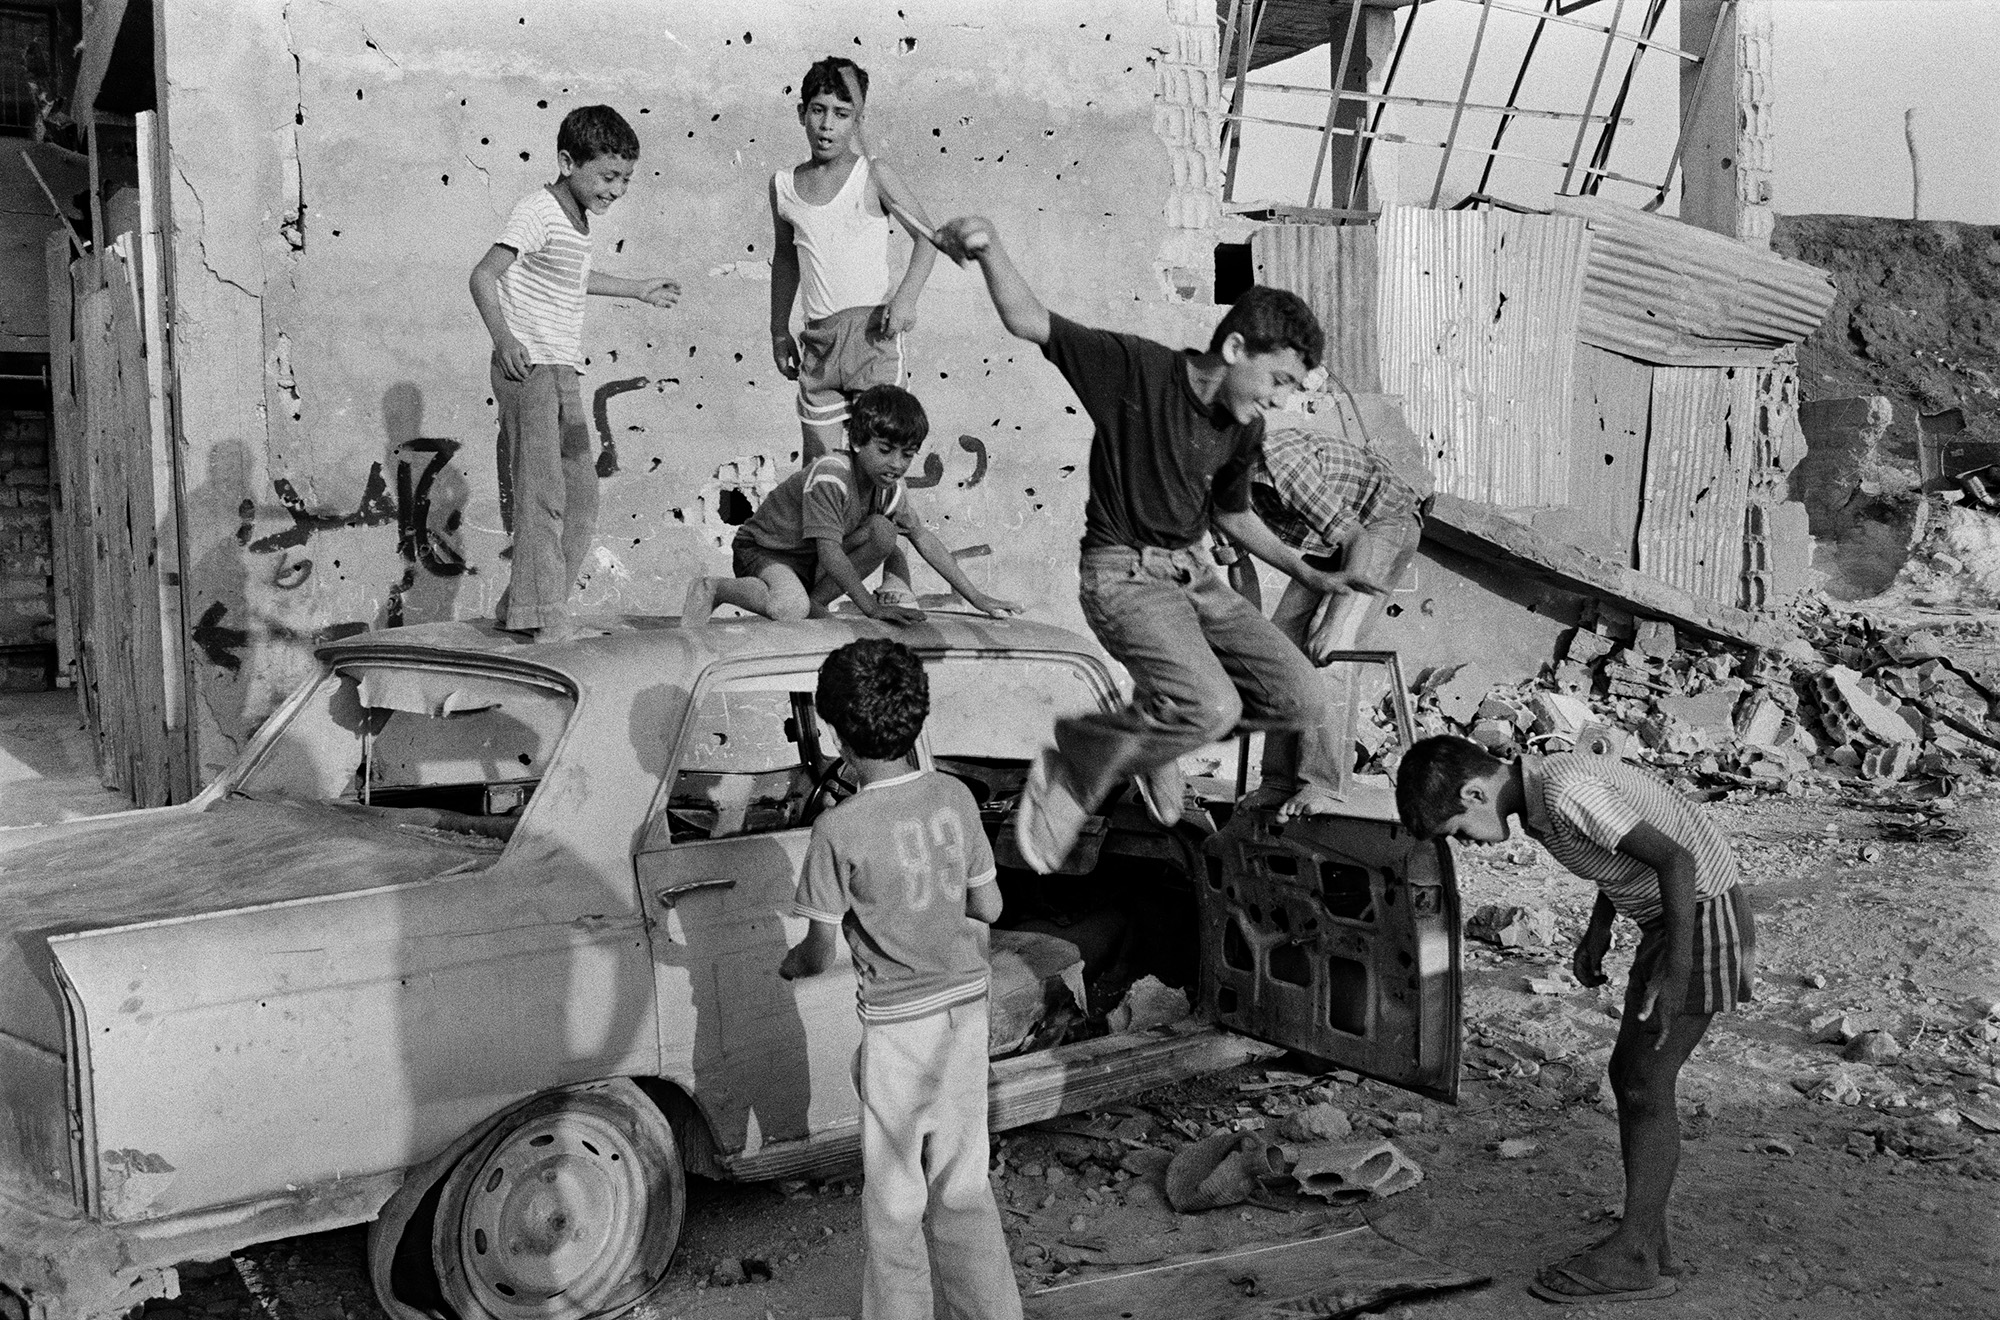 Beirut, Libanon, 1983. Kinder beim Spielen in Autowracks in der Nähe der Lager von Sabra und Chantila. 1983 